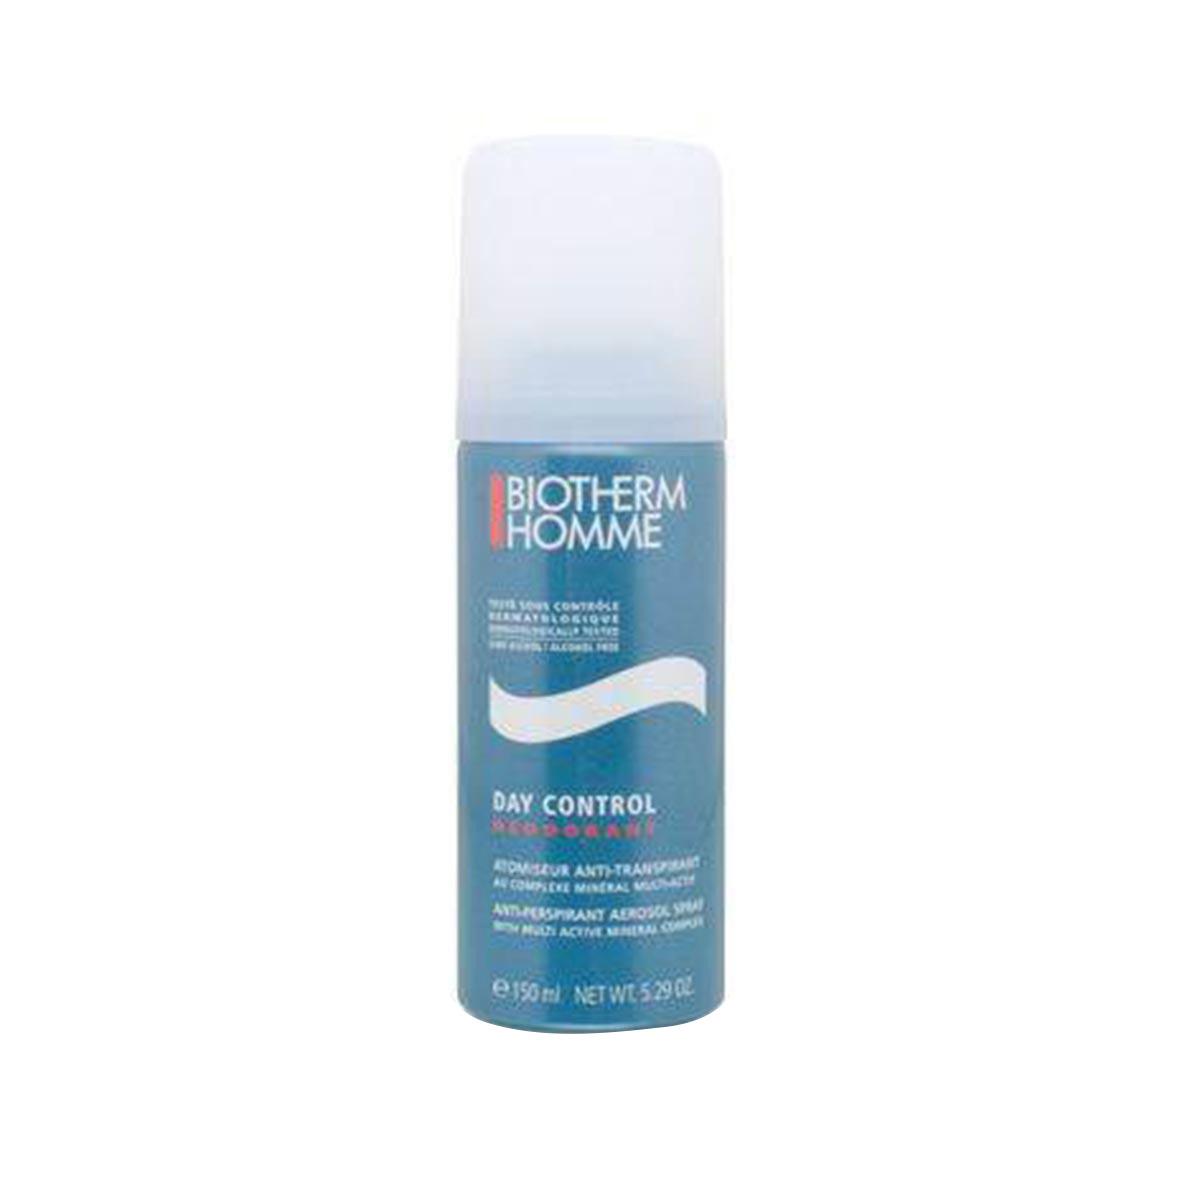 biotherm-men-day-control-dezodorant-150ml